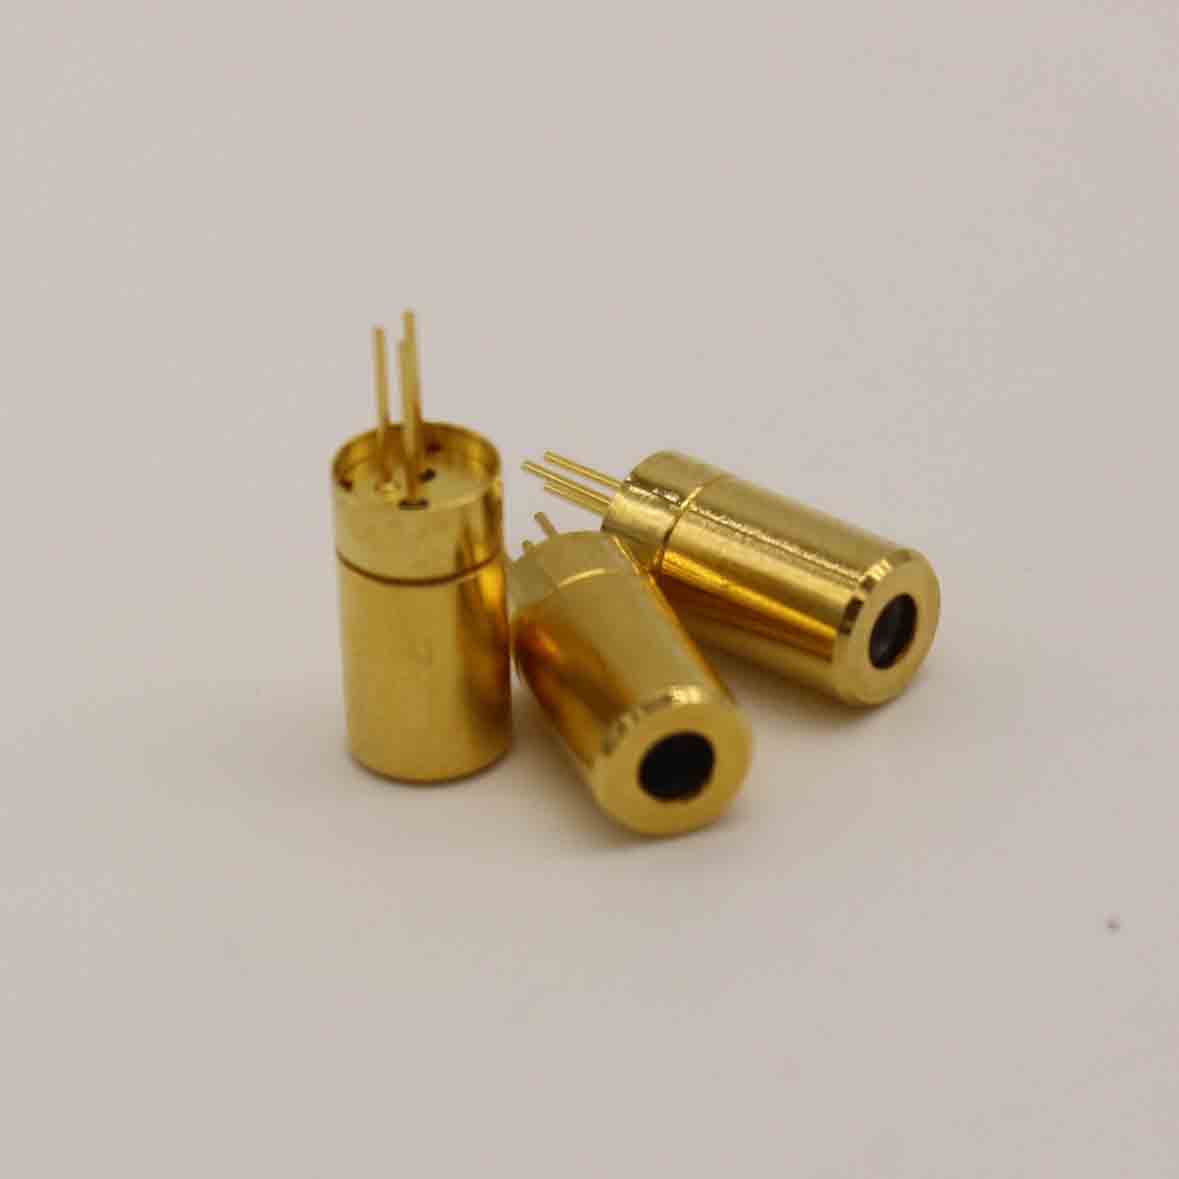 PIN LASER 6x12mm Módulos de puntero láser pequeño 635nm 5MW para empuñamientos láser de pistola